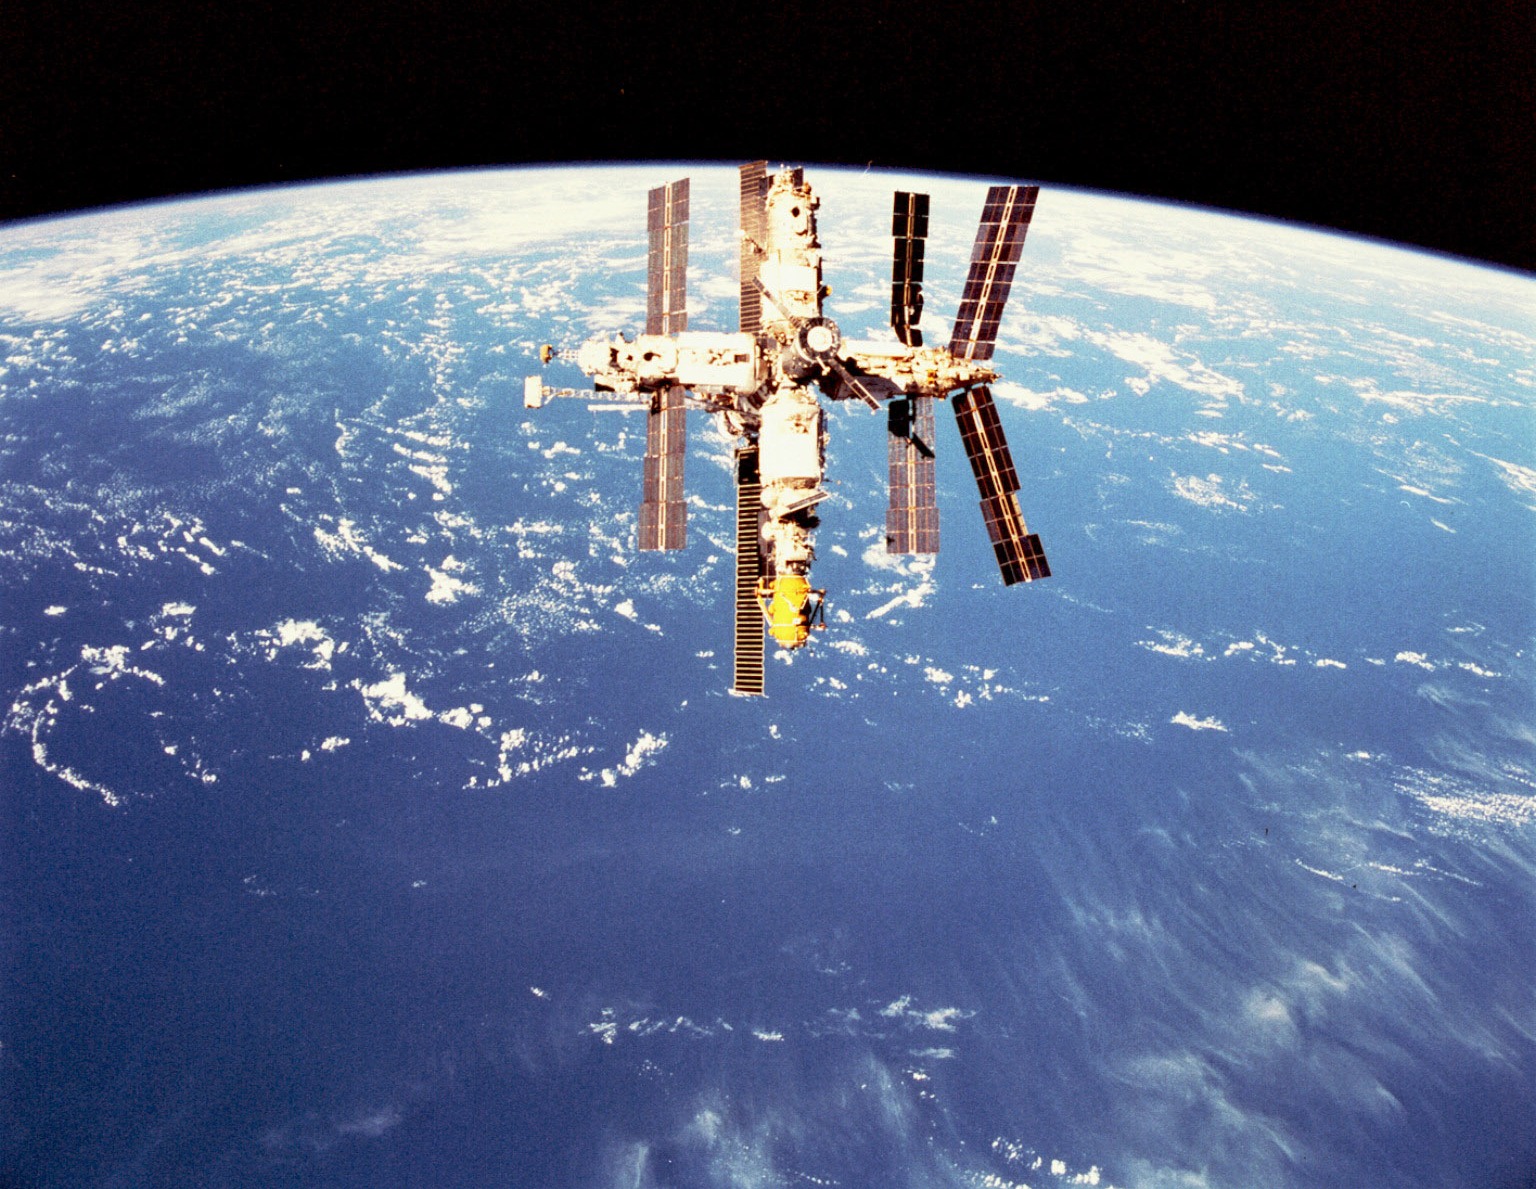 Die russische Raumstation Mir wurde in den Ozean geschickt und verbleibt dort seitdem 2.670 Kilometer von den nächsten Menschen und Land entfernt